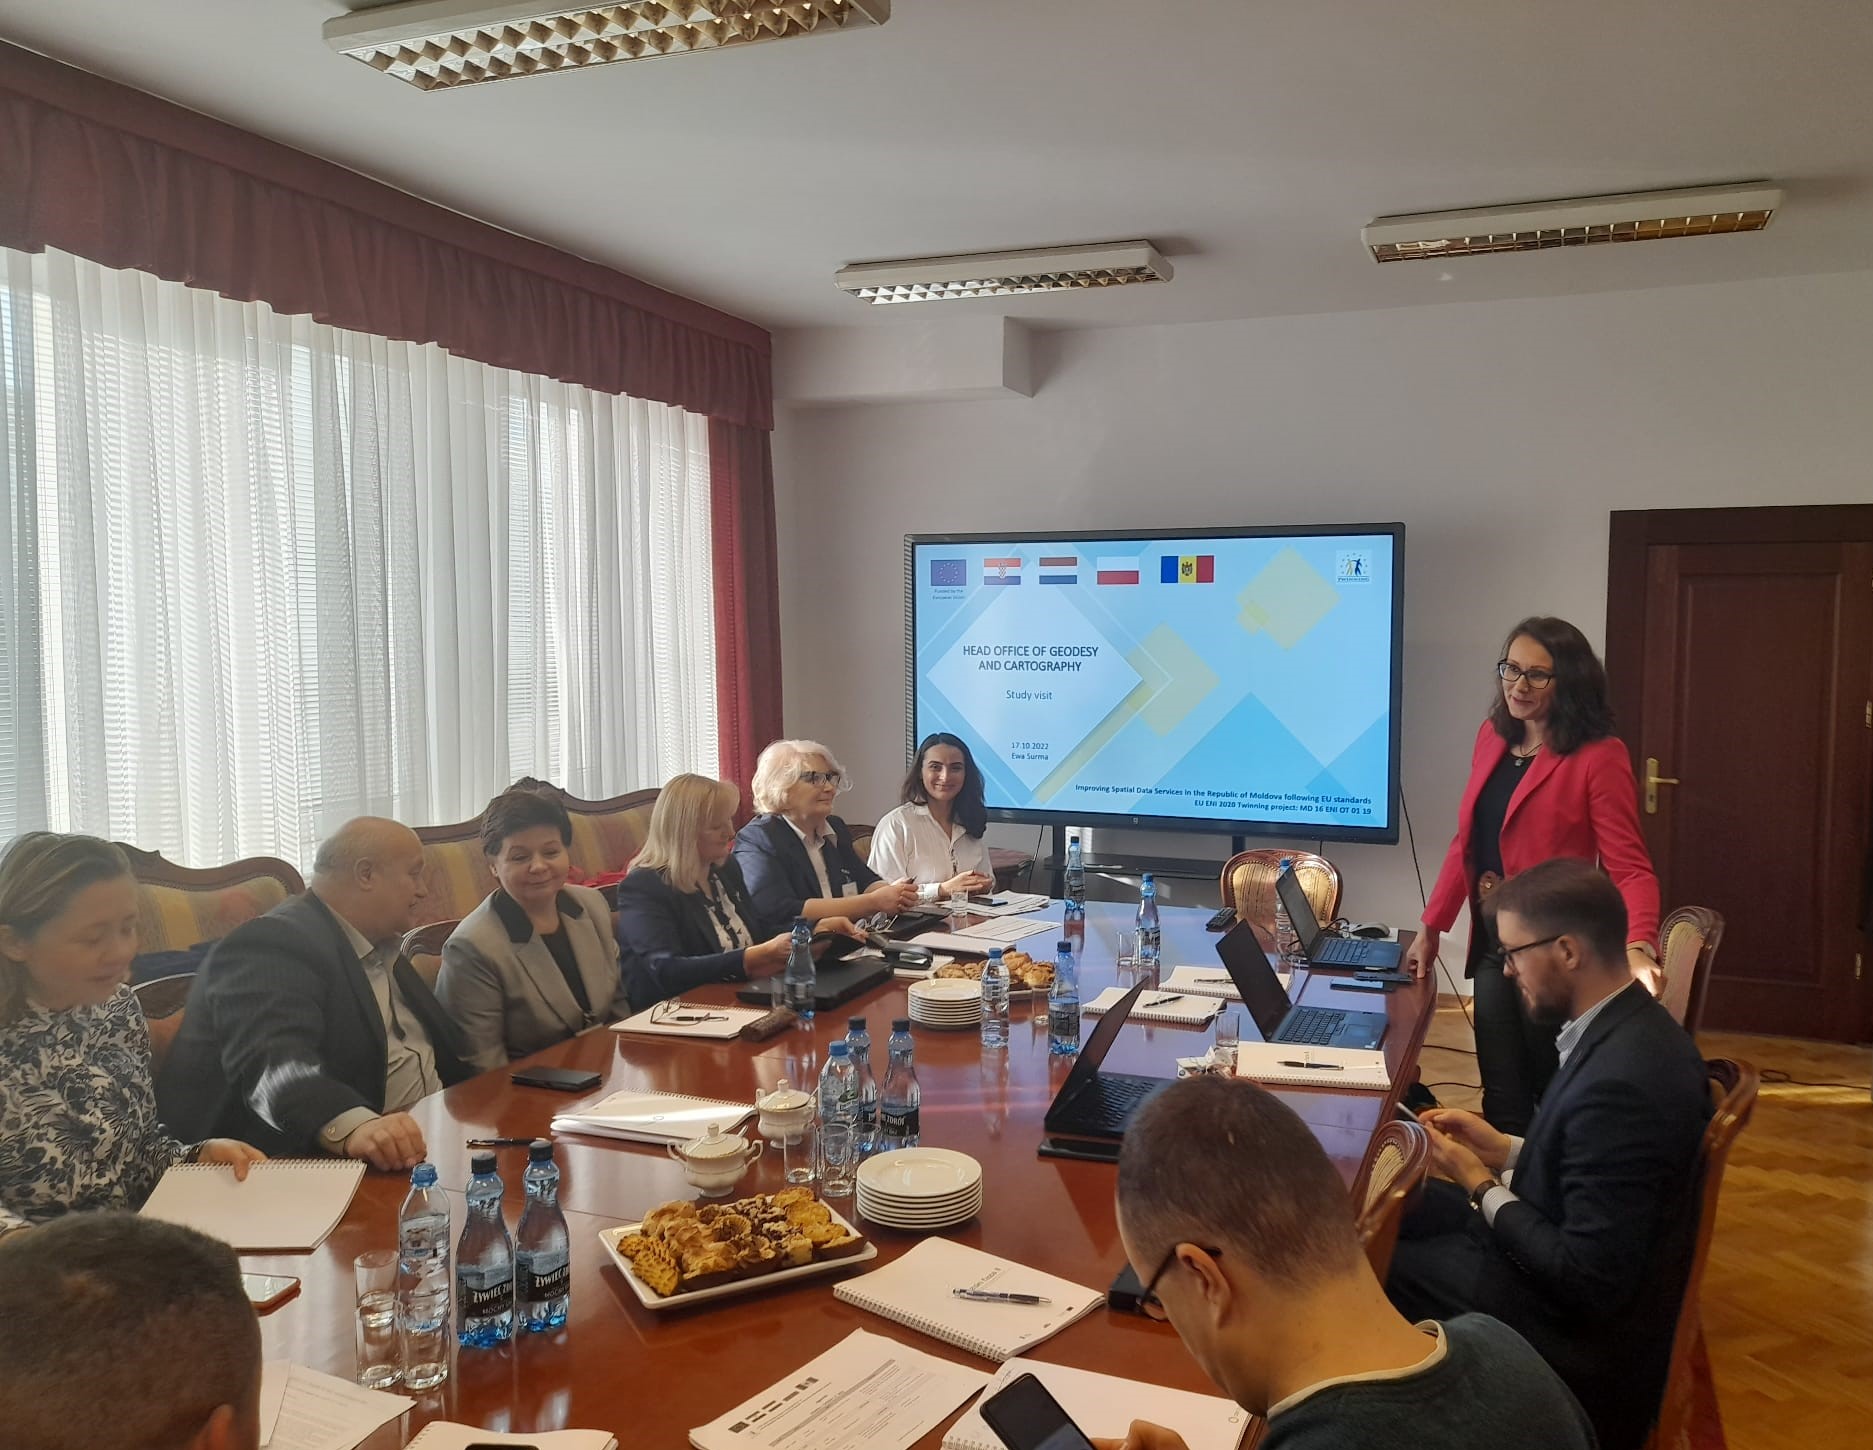 Dyrektor Departamentu Strategii, Współpracy Zagranicznej oraz Informacji Publicznej Ewa Surma wraz z pracownikami GUGiK oraz przedstawiciele różnych instytucji związanych z systemami informacji przestrzennej z Mołdawii podczas prezentacji na temat otwartych danych przestrzennych.